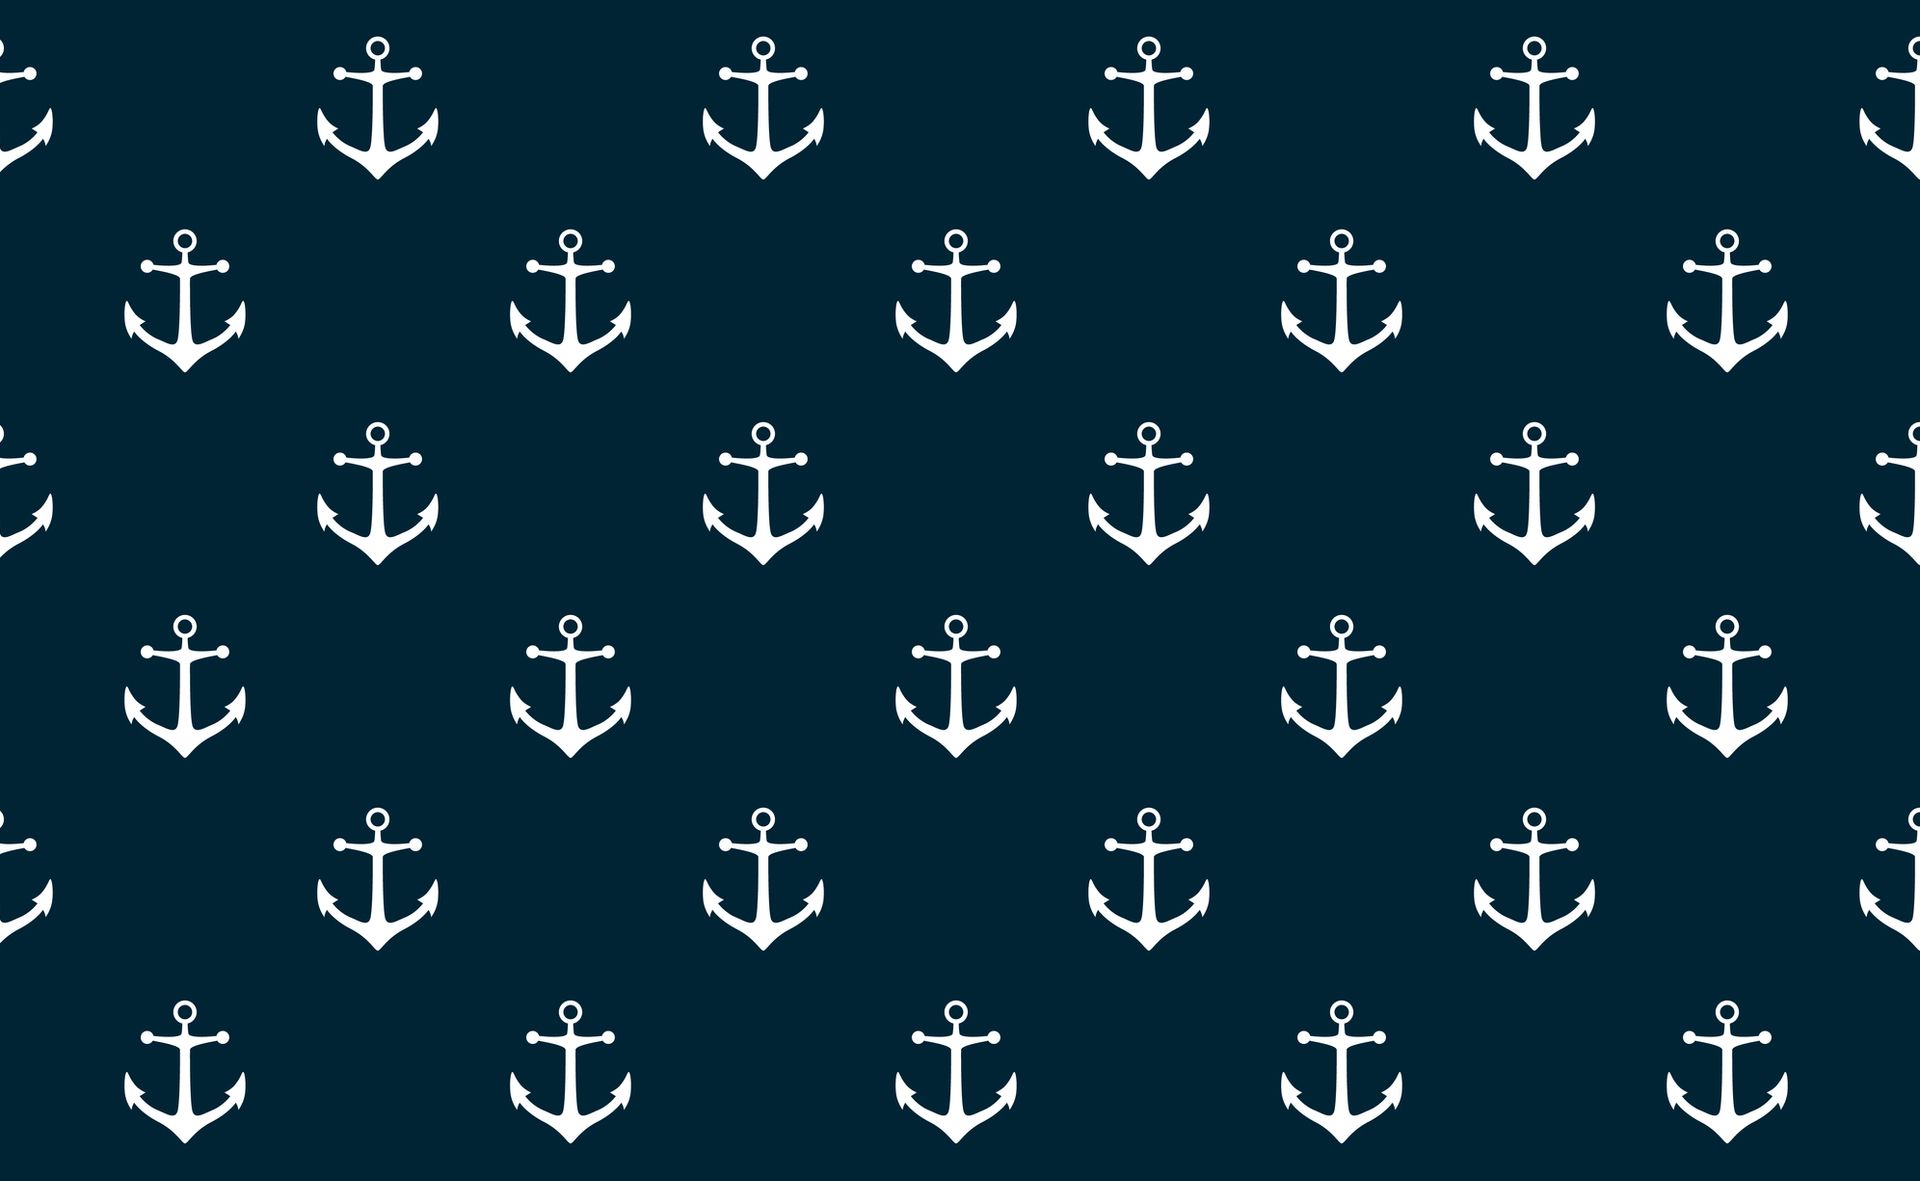 Illustratie van repeterende, witte ankers tegen een blauwe achtergrond ter illustratie van anchor text op websites en blogs.